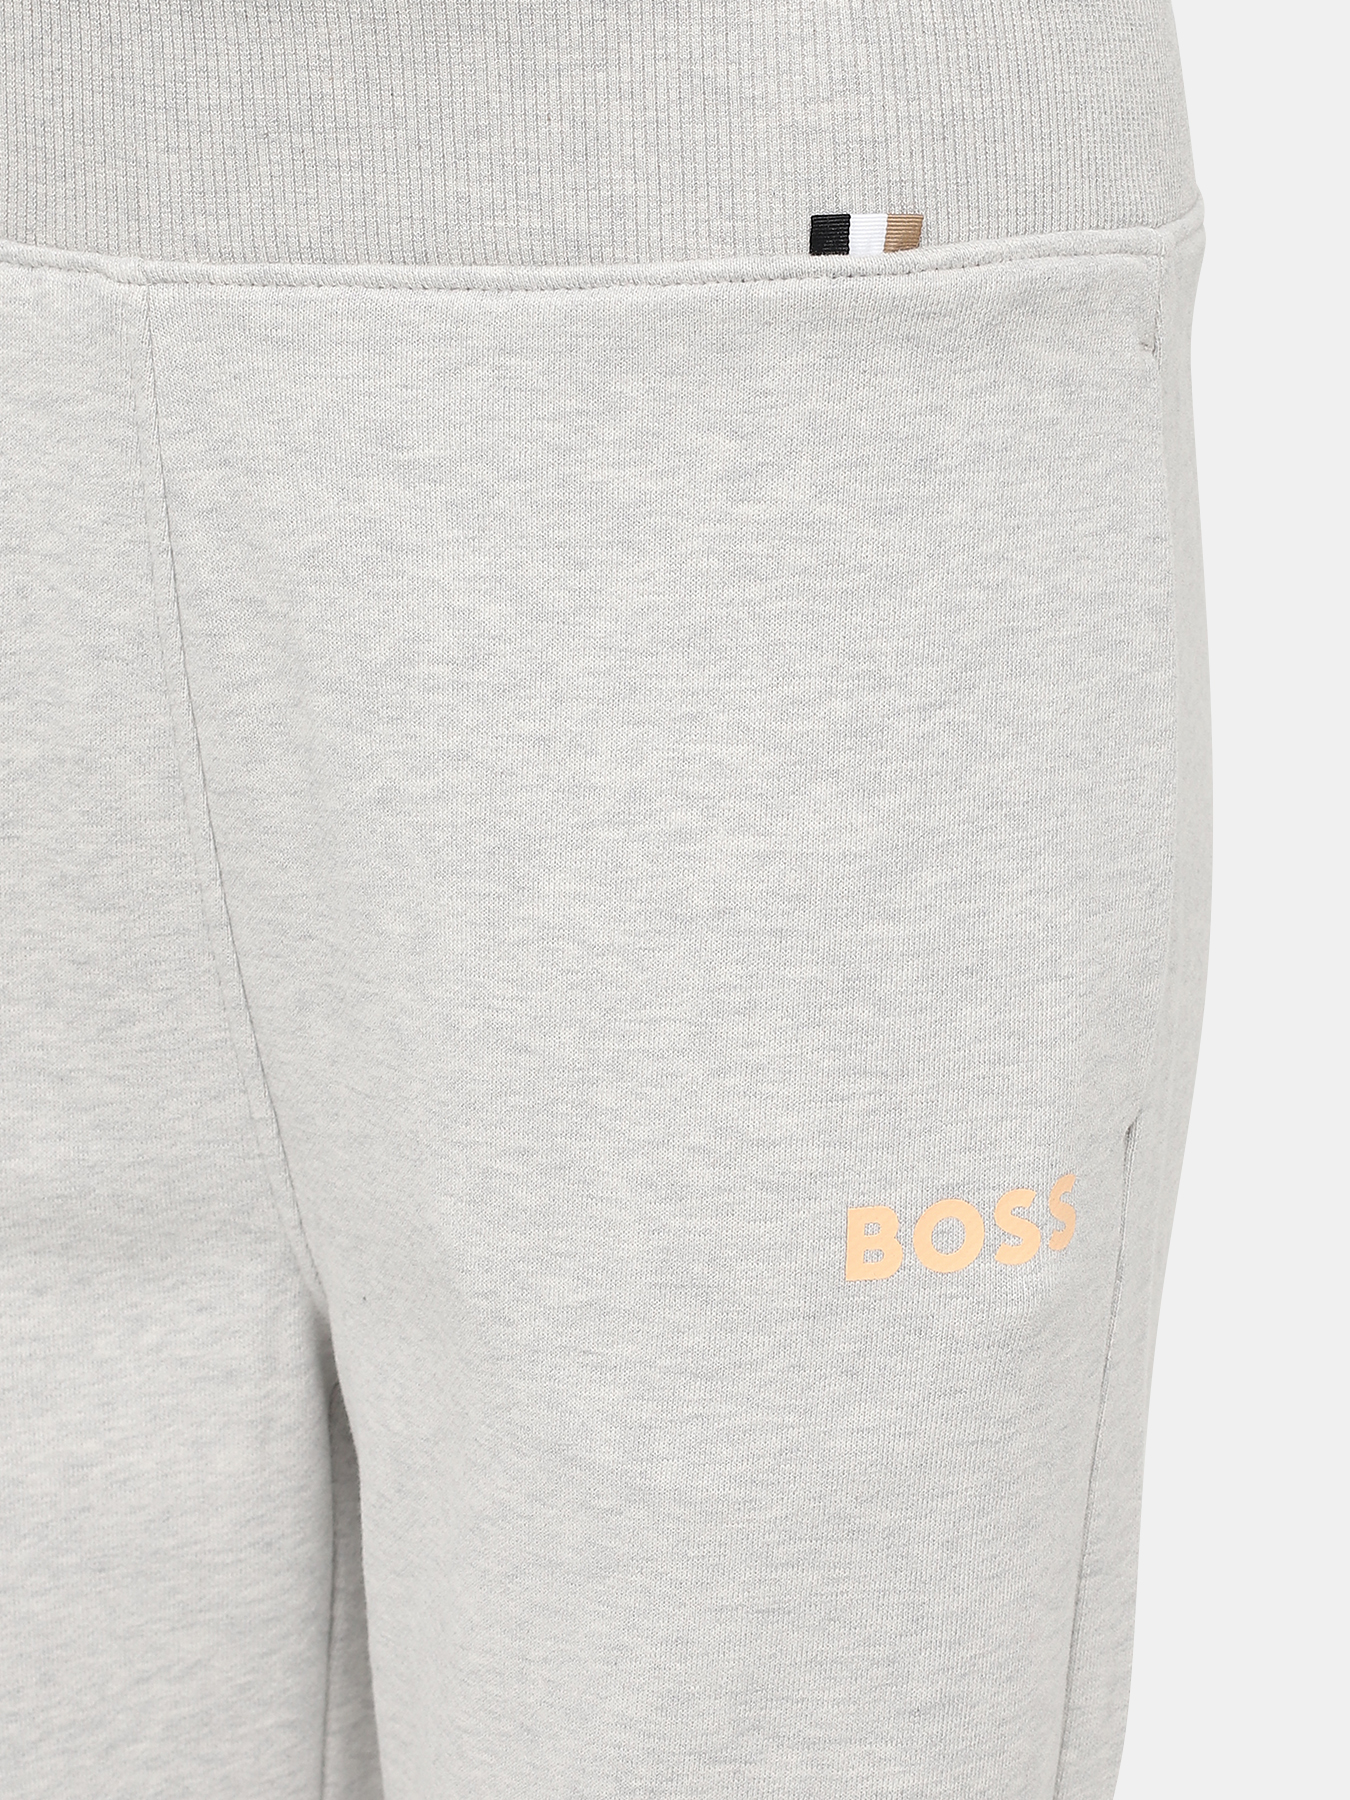 Спортивные брюки Ejoy BOSS 424173-042, цвет серый, размер 42-44 - фото 2